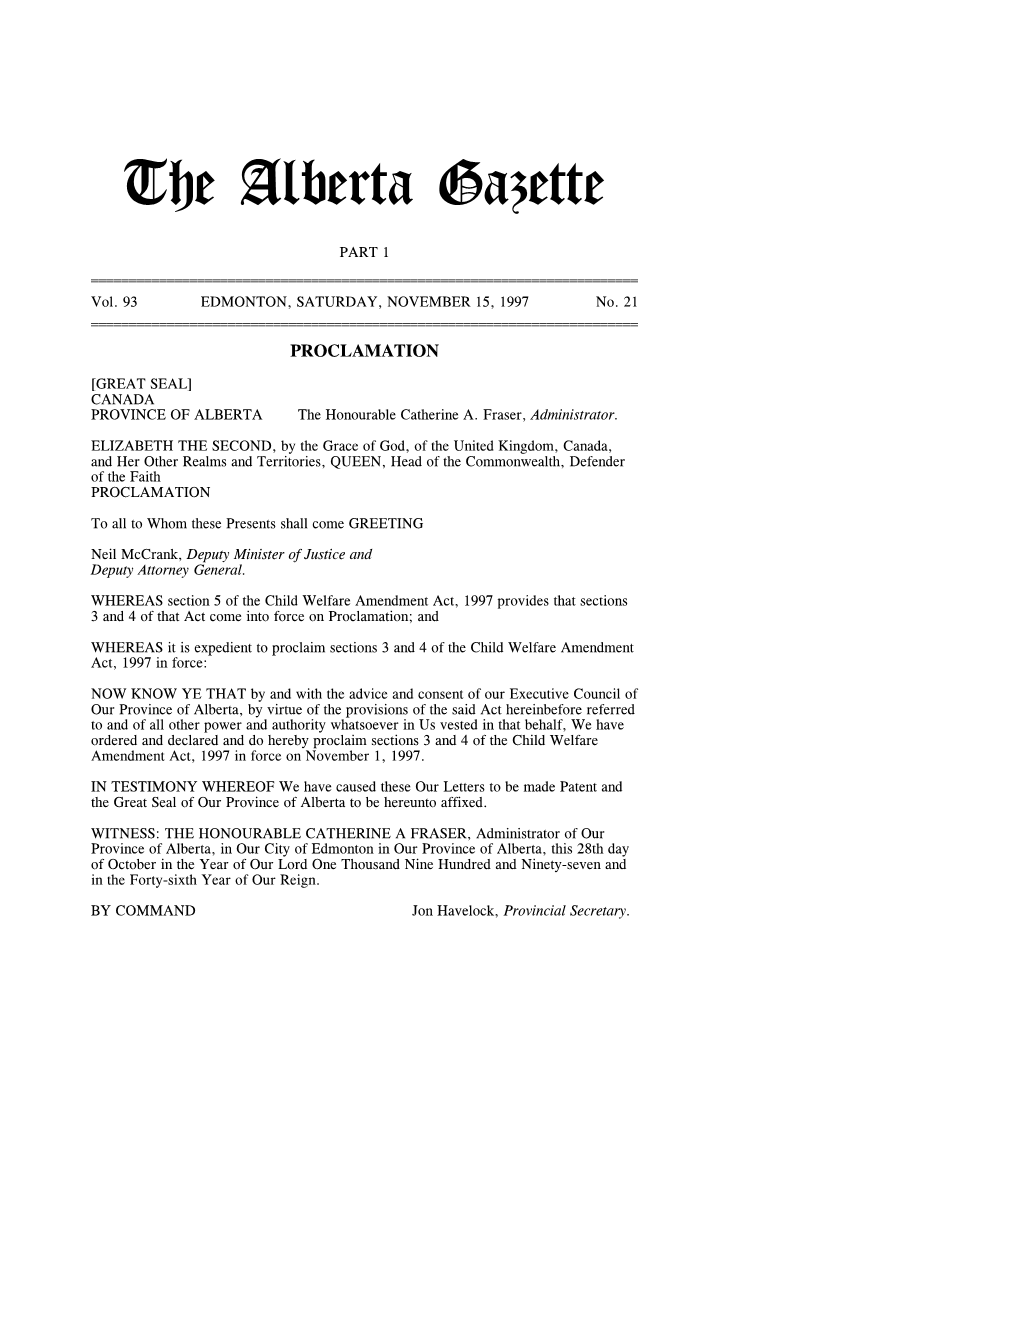 The Alberta Gazette, Part I, November 15, 1997